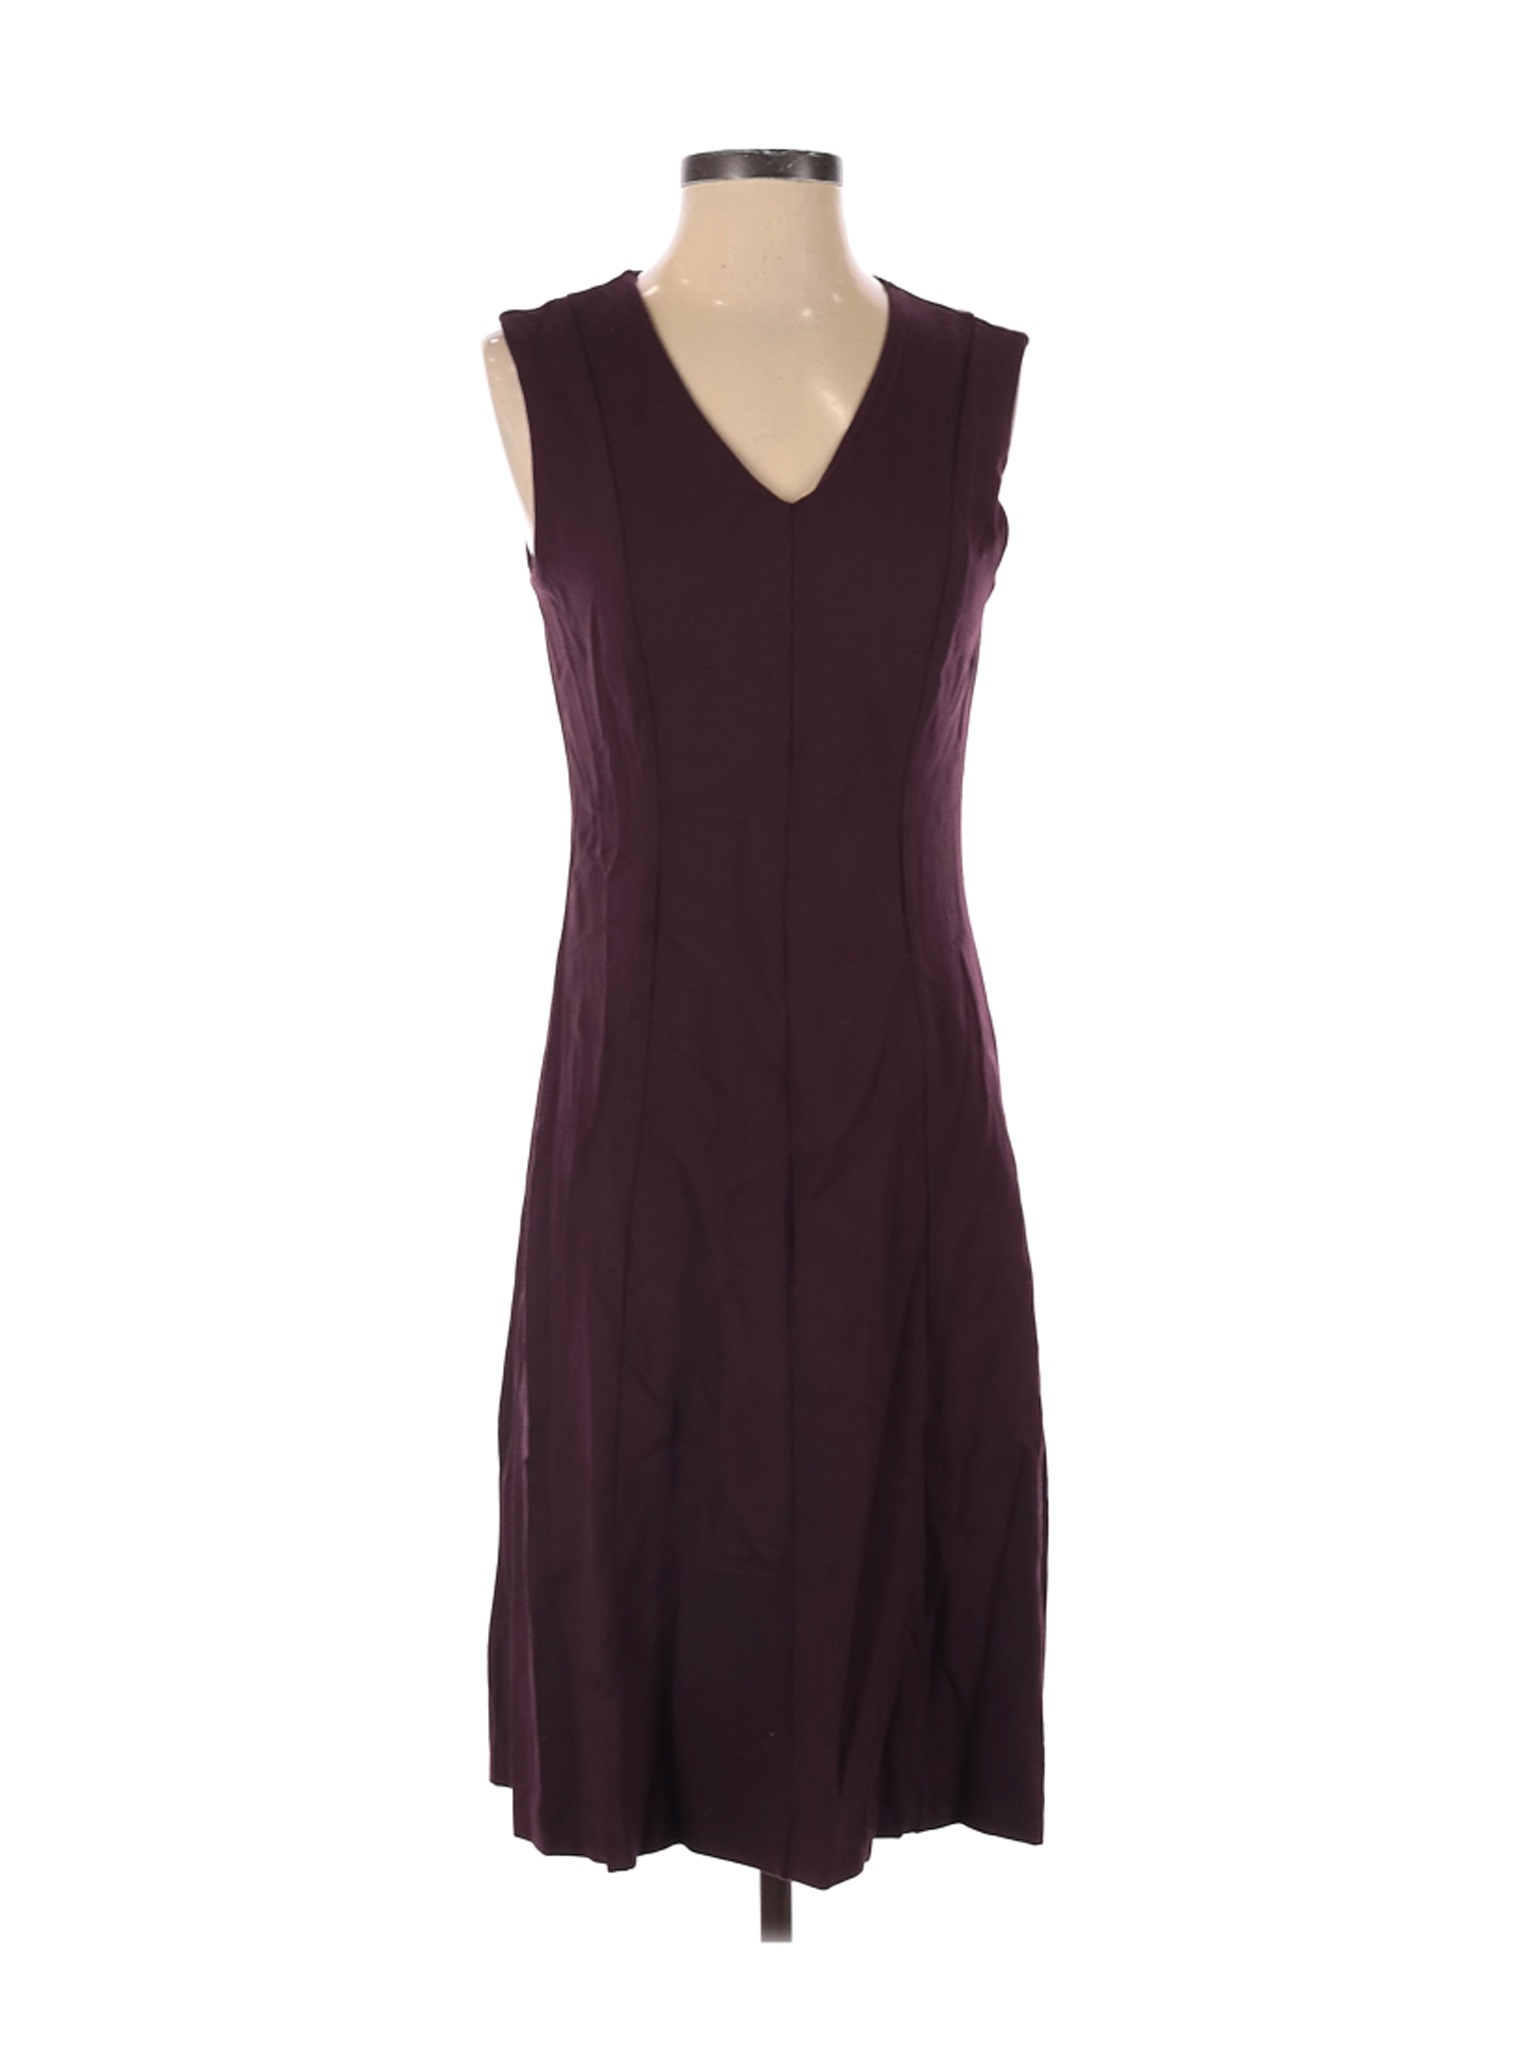 Ann Taylor Women Purple Casual Dress 4 | eBay